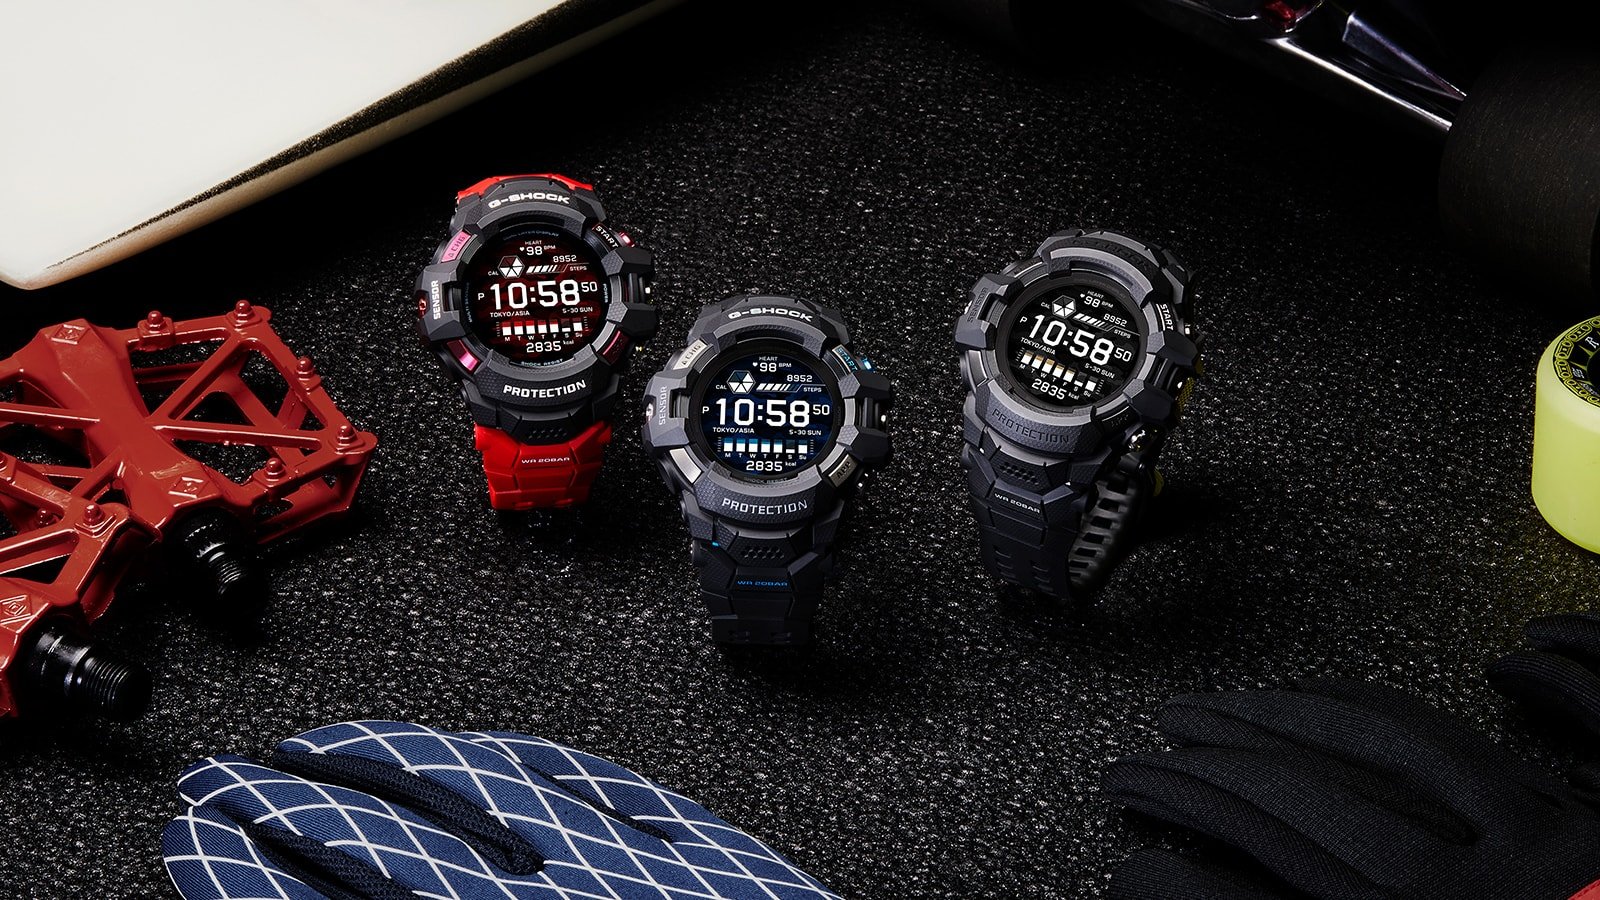 Casio ra mắt đồng hồ G-Squad Pro GSW-H1000, đồng hồ G-Shock chạy Wear OS đầu tiên